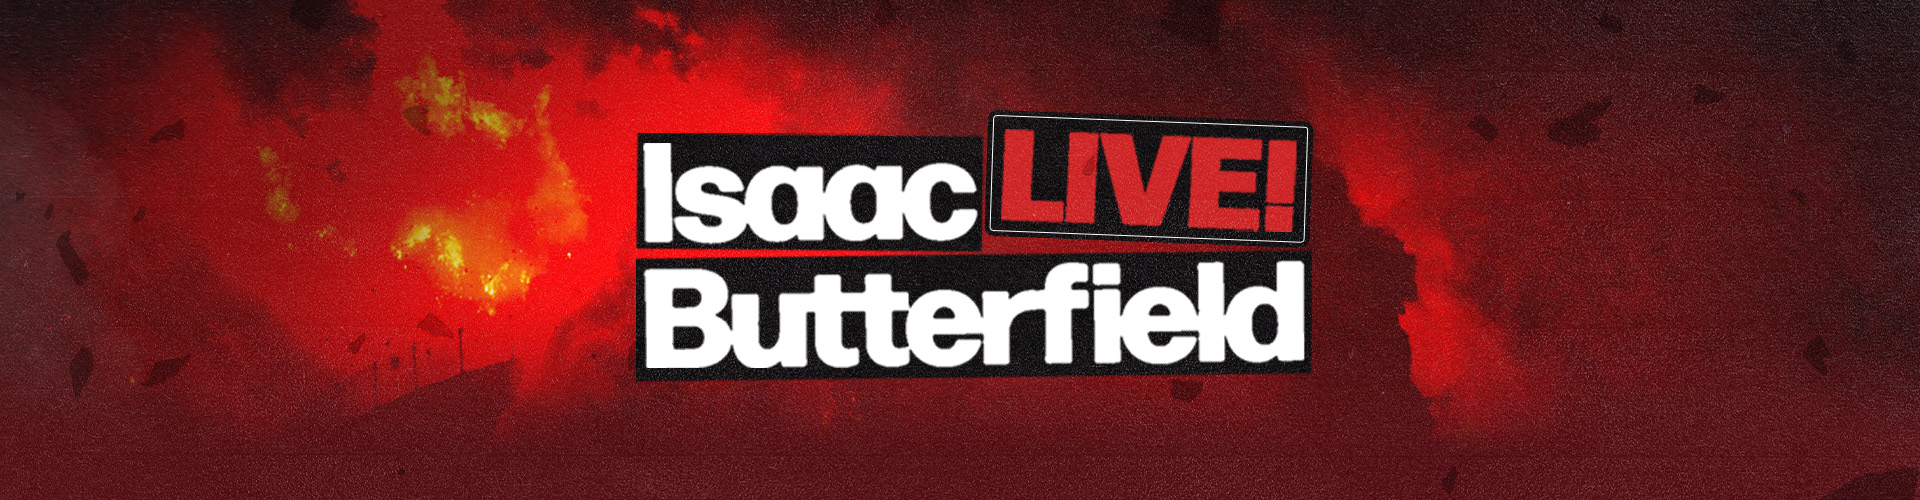 Isaac Butterfield Live